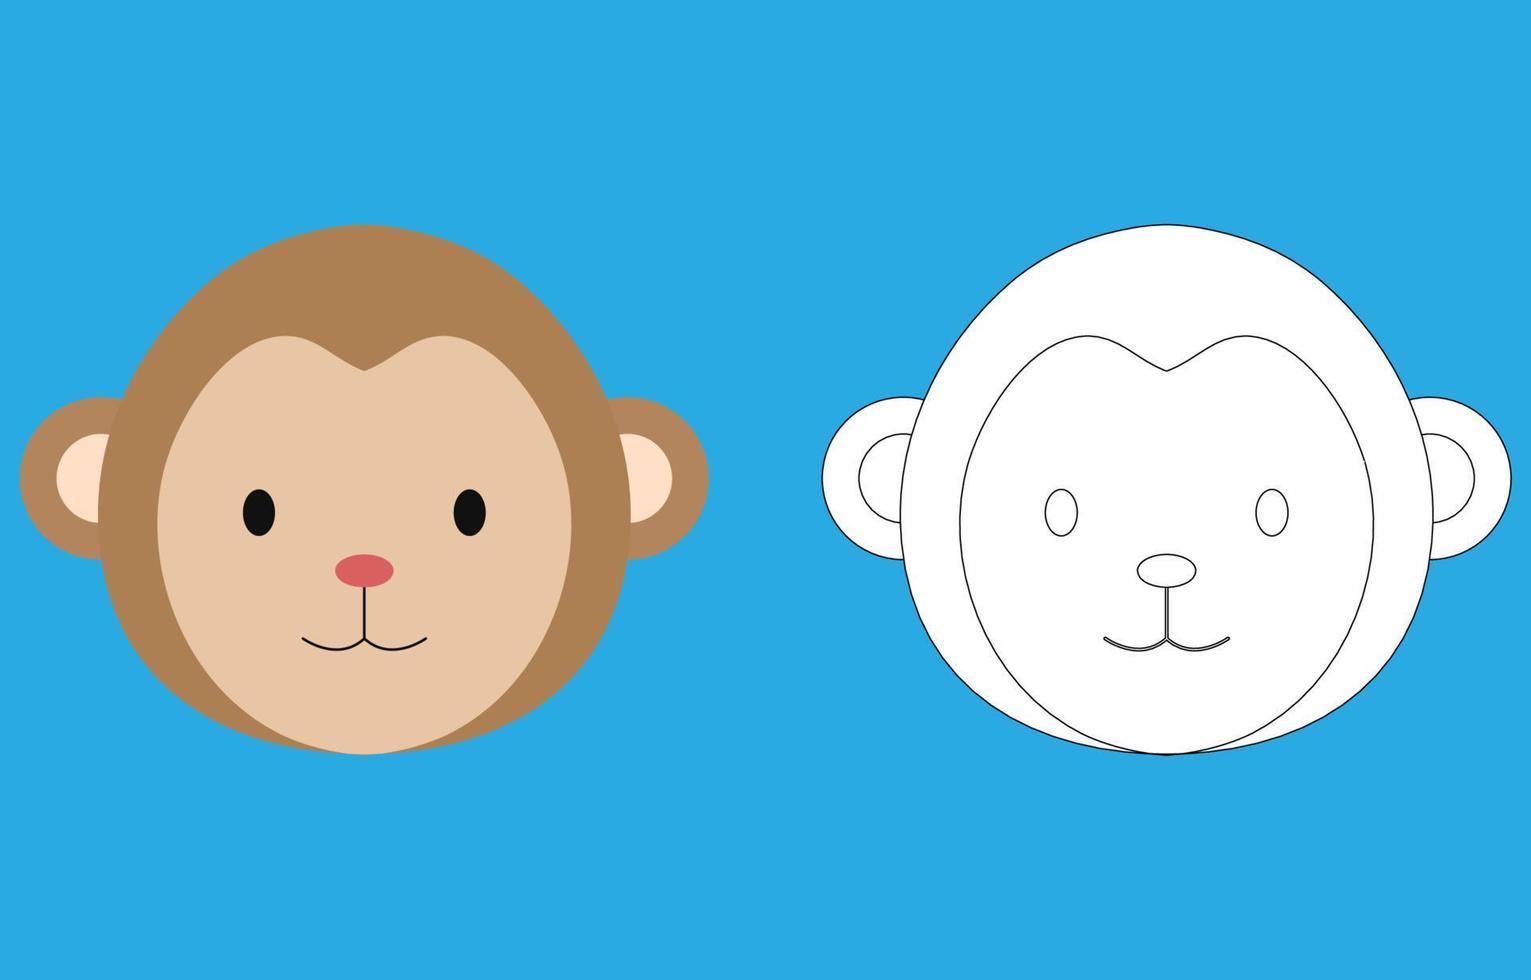 Desenho de Macaco de desenho animado para colorir